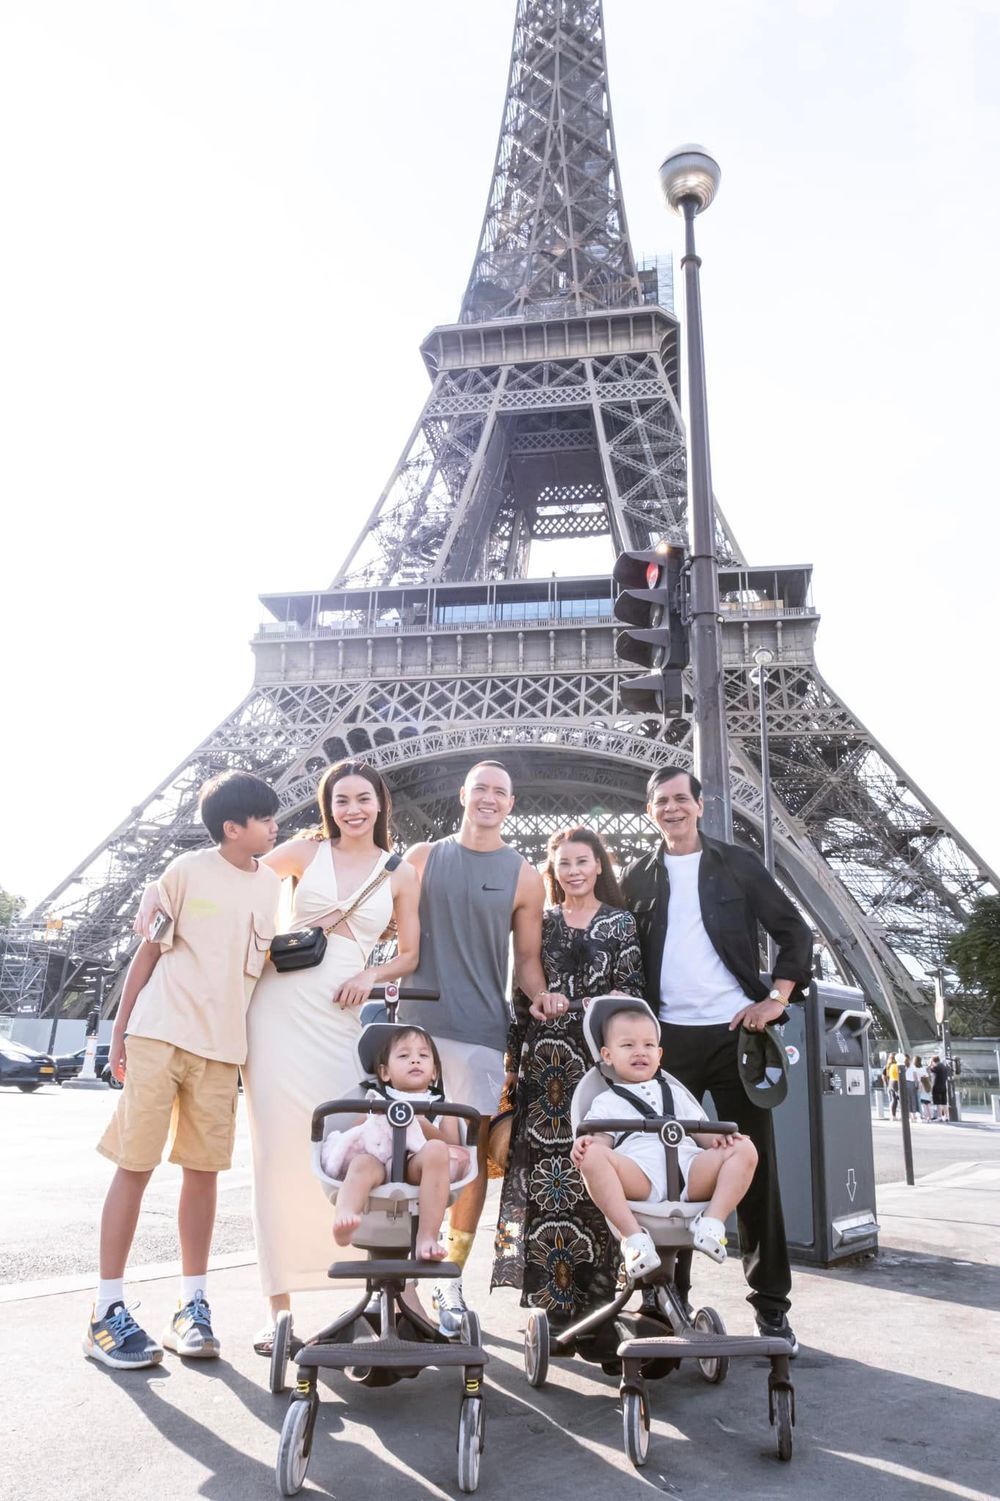  
Gia đình nữ ca sĩ chụp ảnh kỷ niệm tại Paris, Pháp. (Ảnh: Instagram @henrylisaleon) - Tin sao Viet - Tin tuc sao Viet - Scandal sao Viet - Tin tuc cua Sao - Tin cua Sao